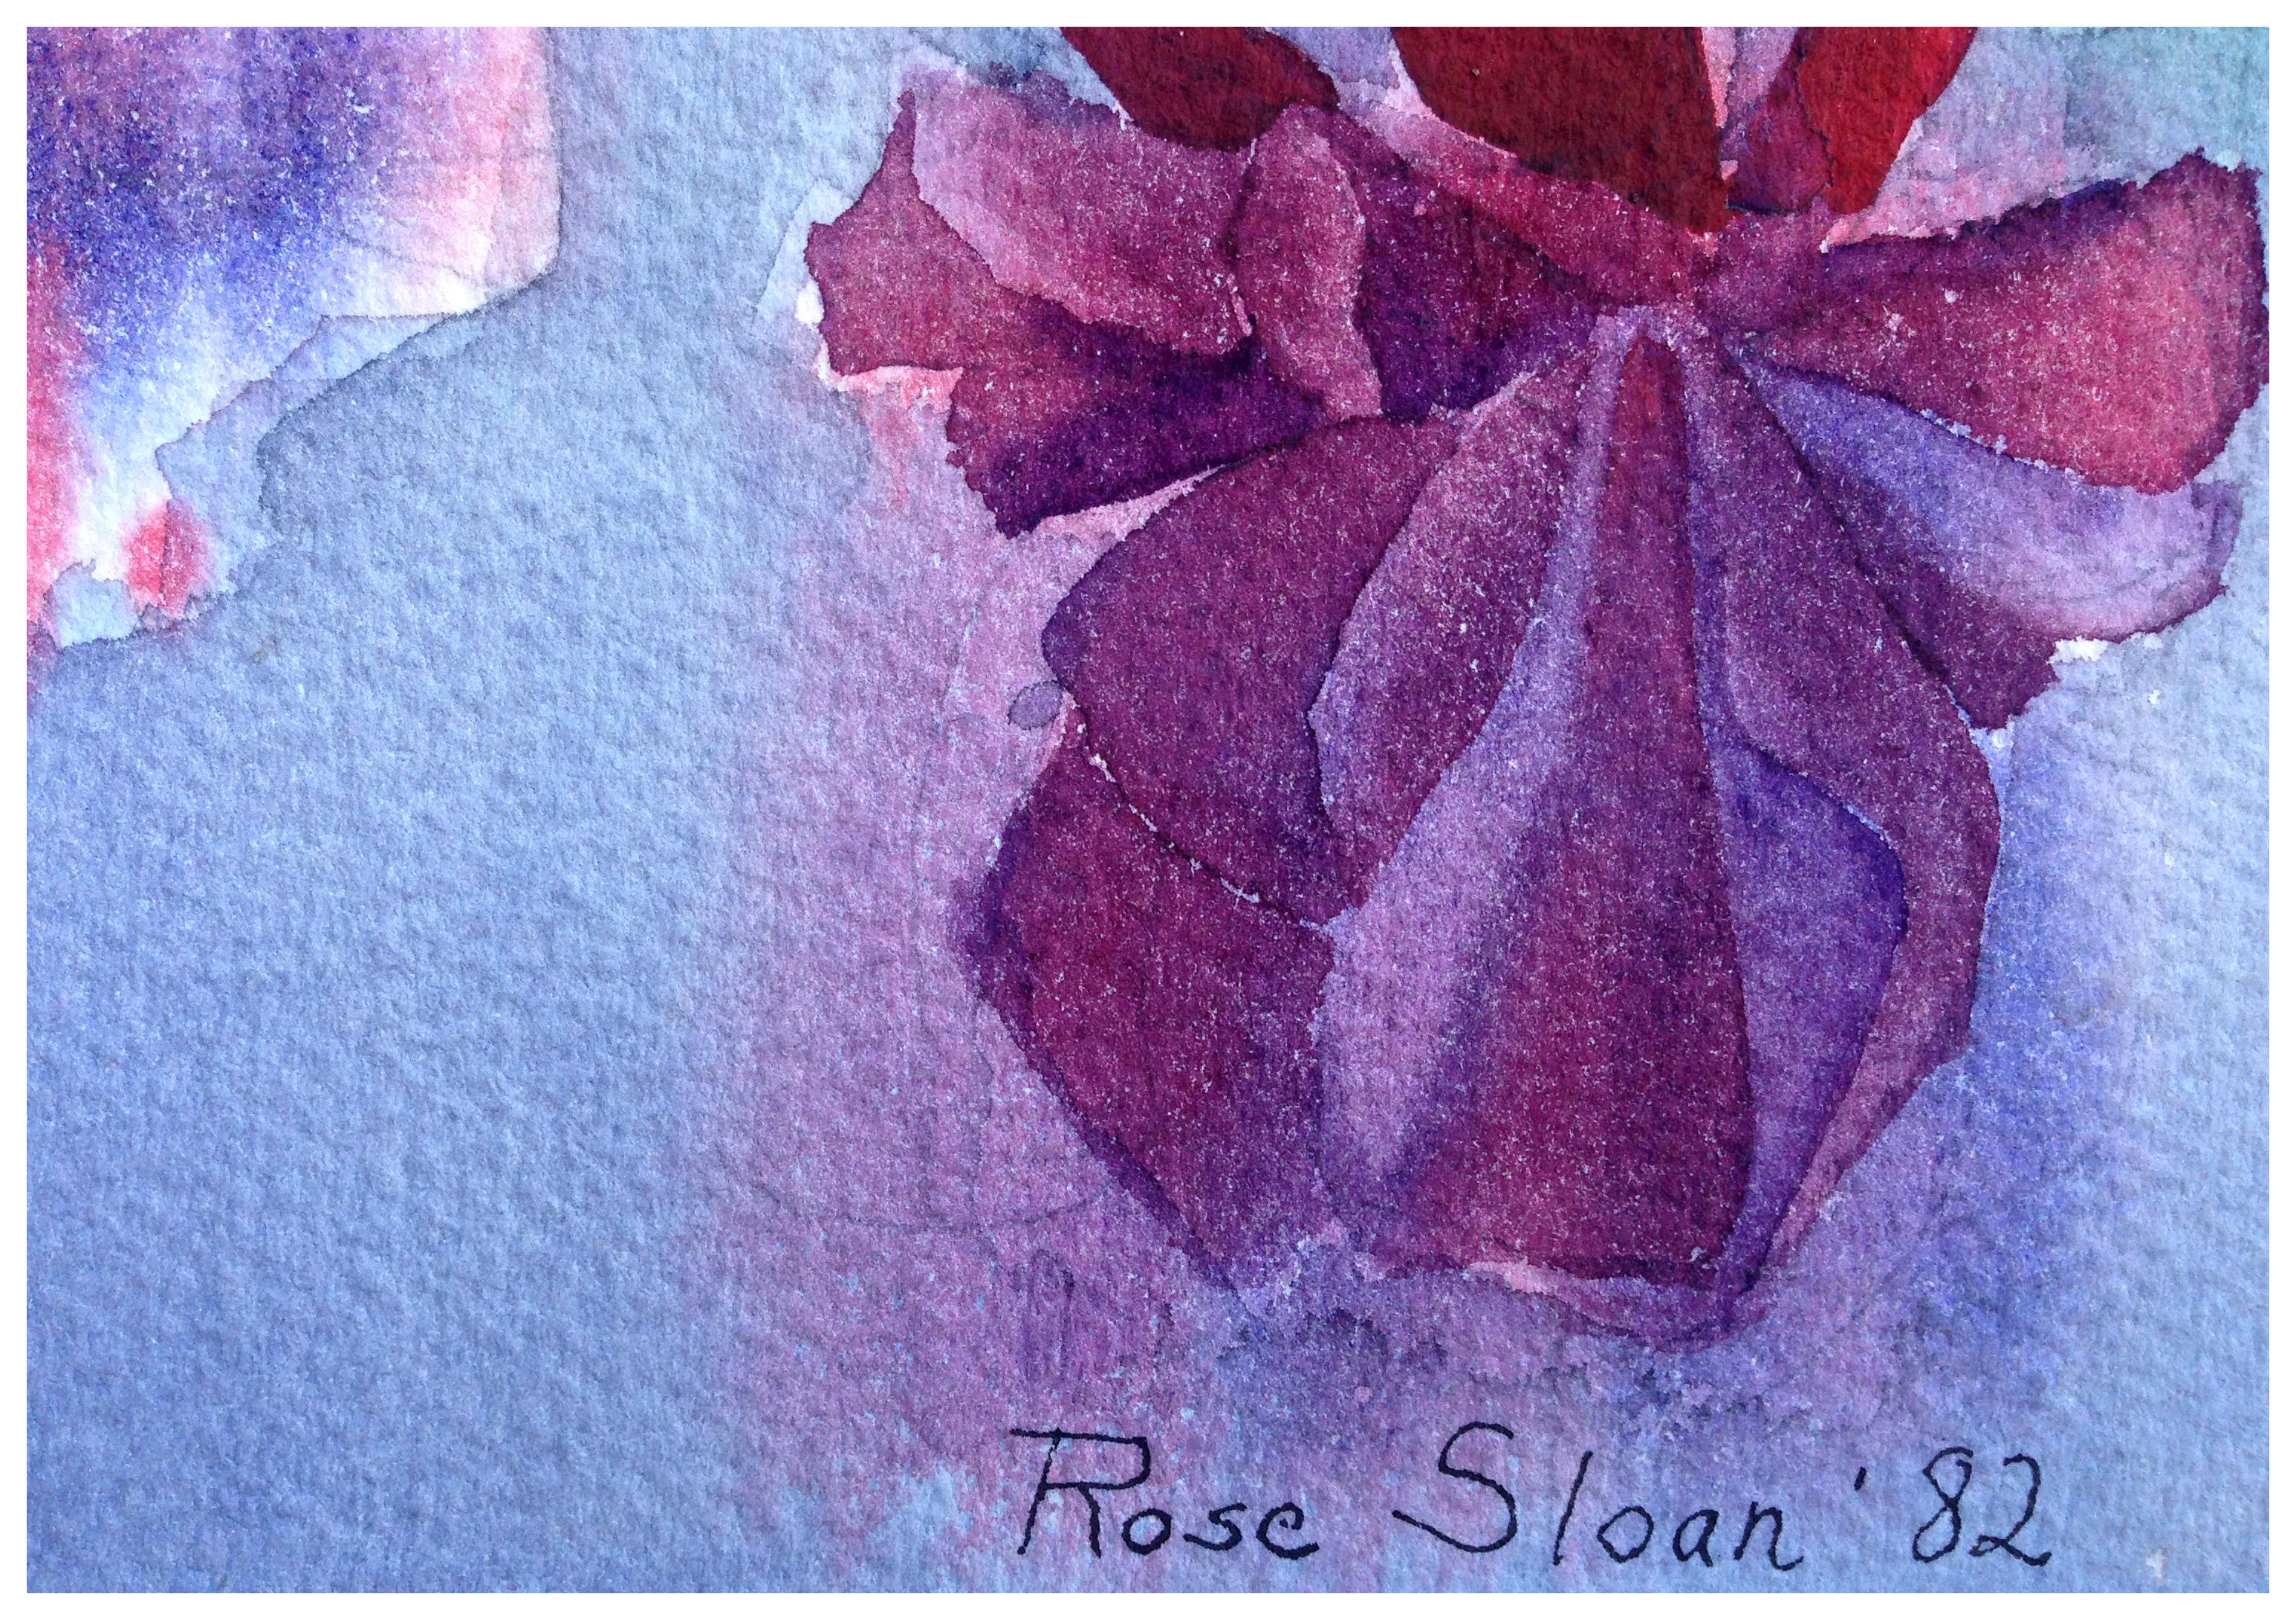 rose sloan